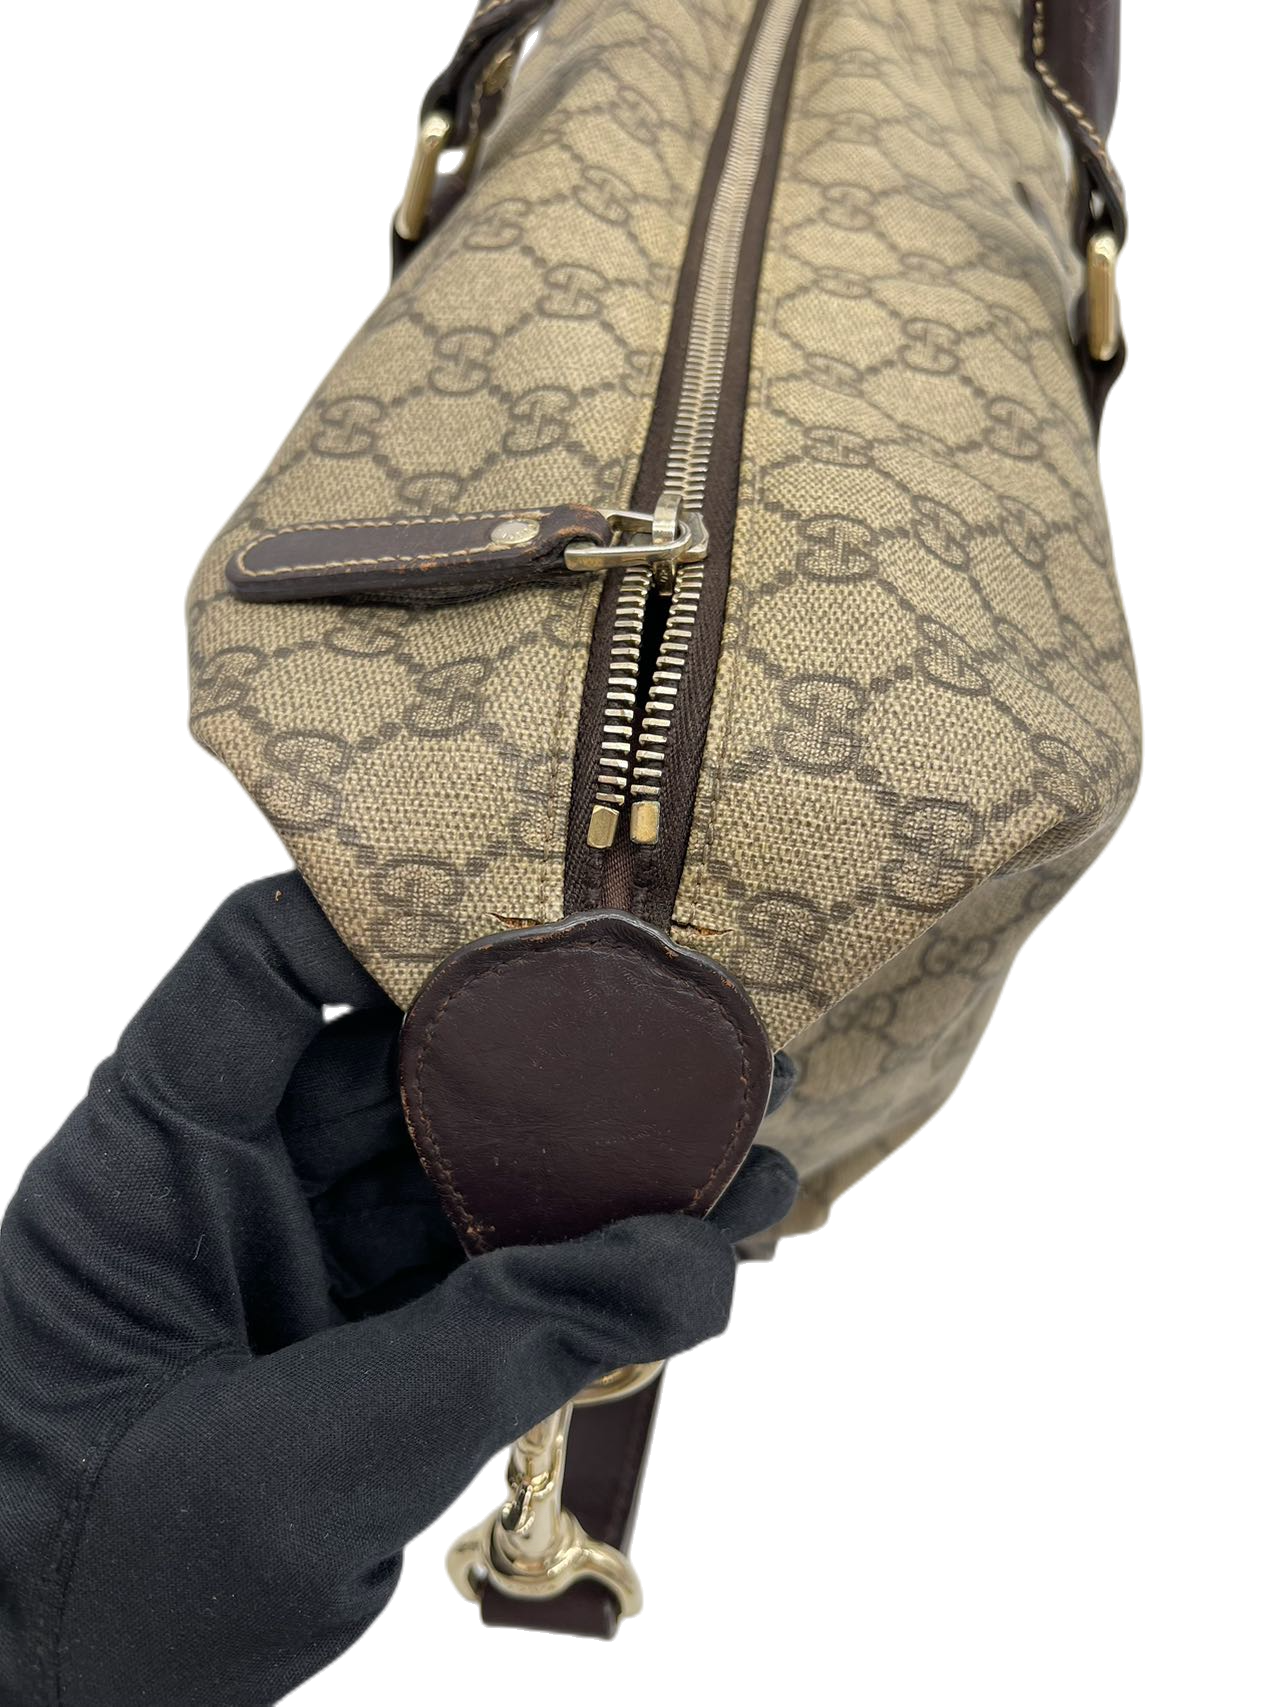 Preloved Gucci GG Logo Printed Canvas Travel Bag Large Totes Shoulder Bag